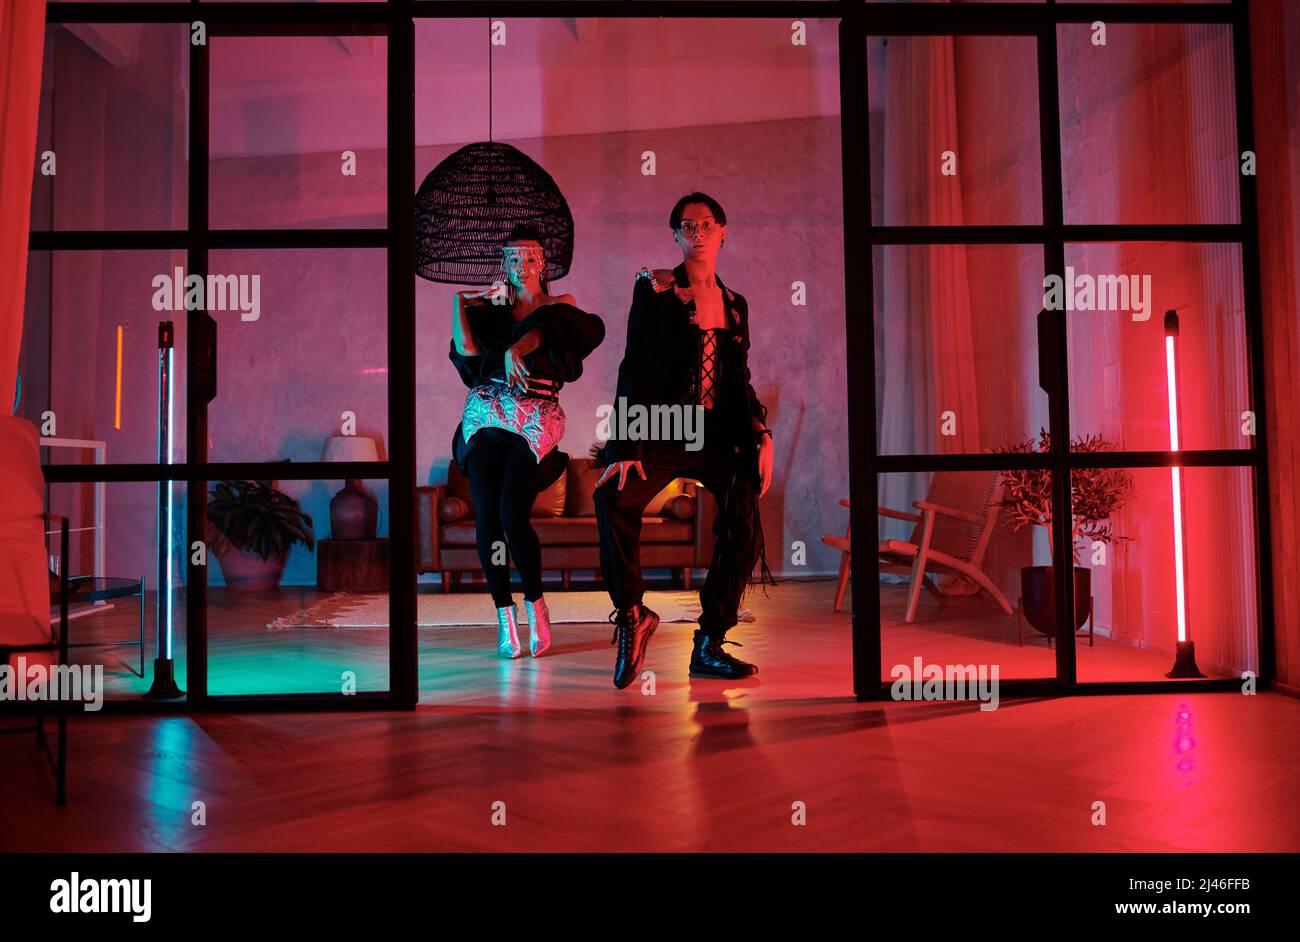 Zwei Jugendliche dynamische Tänzer, die im Studio oder Loft-Apartment mit pinken Neonlampen vor der Tür modische Tanzbewegungen aufführen Stockfoto